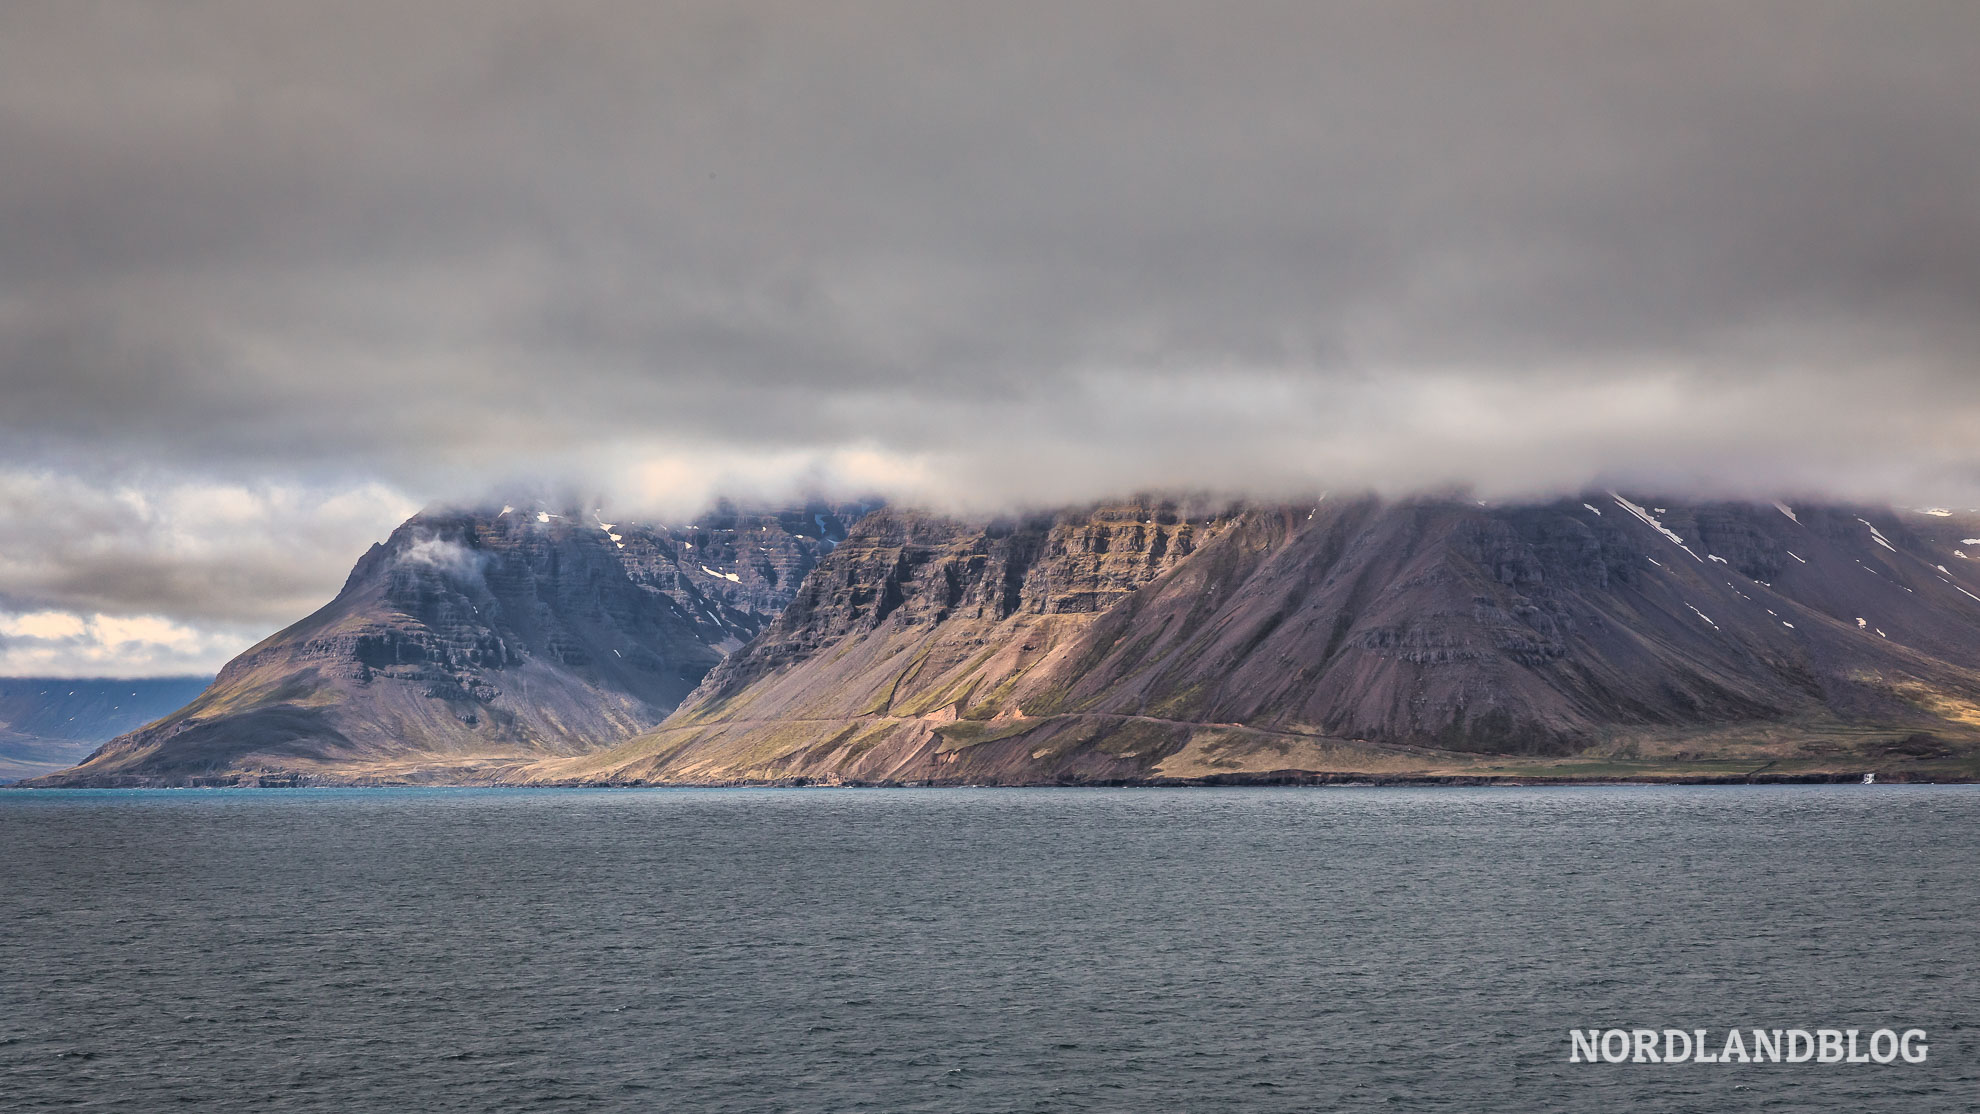 Letzter Blick auf Island von der MS Norröna der Smyril Line (Nordlandblog)